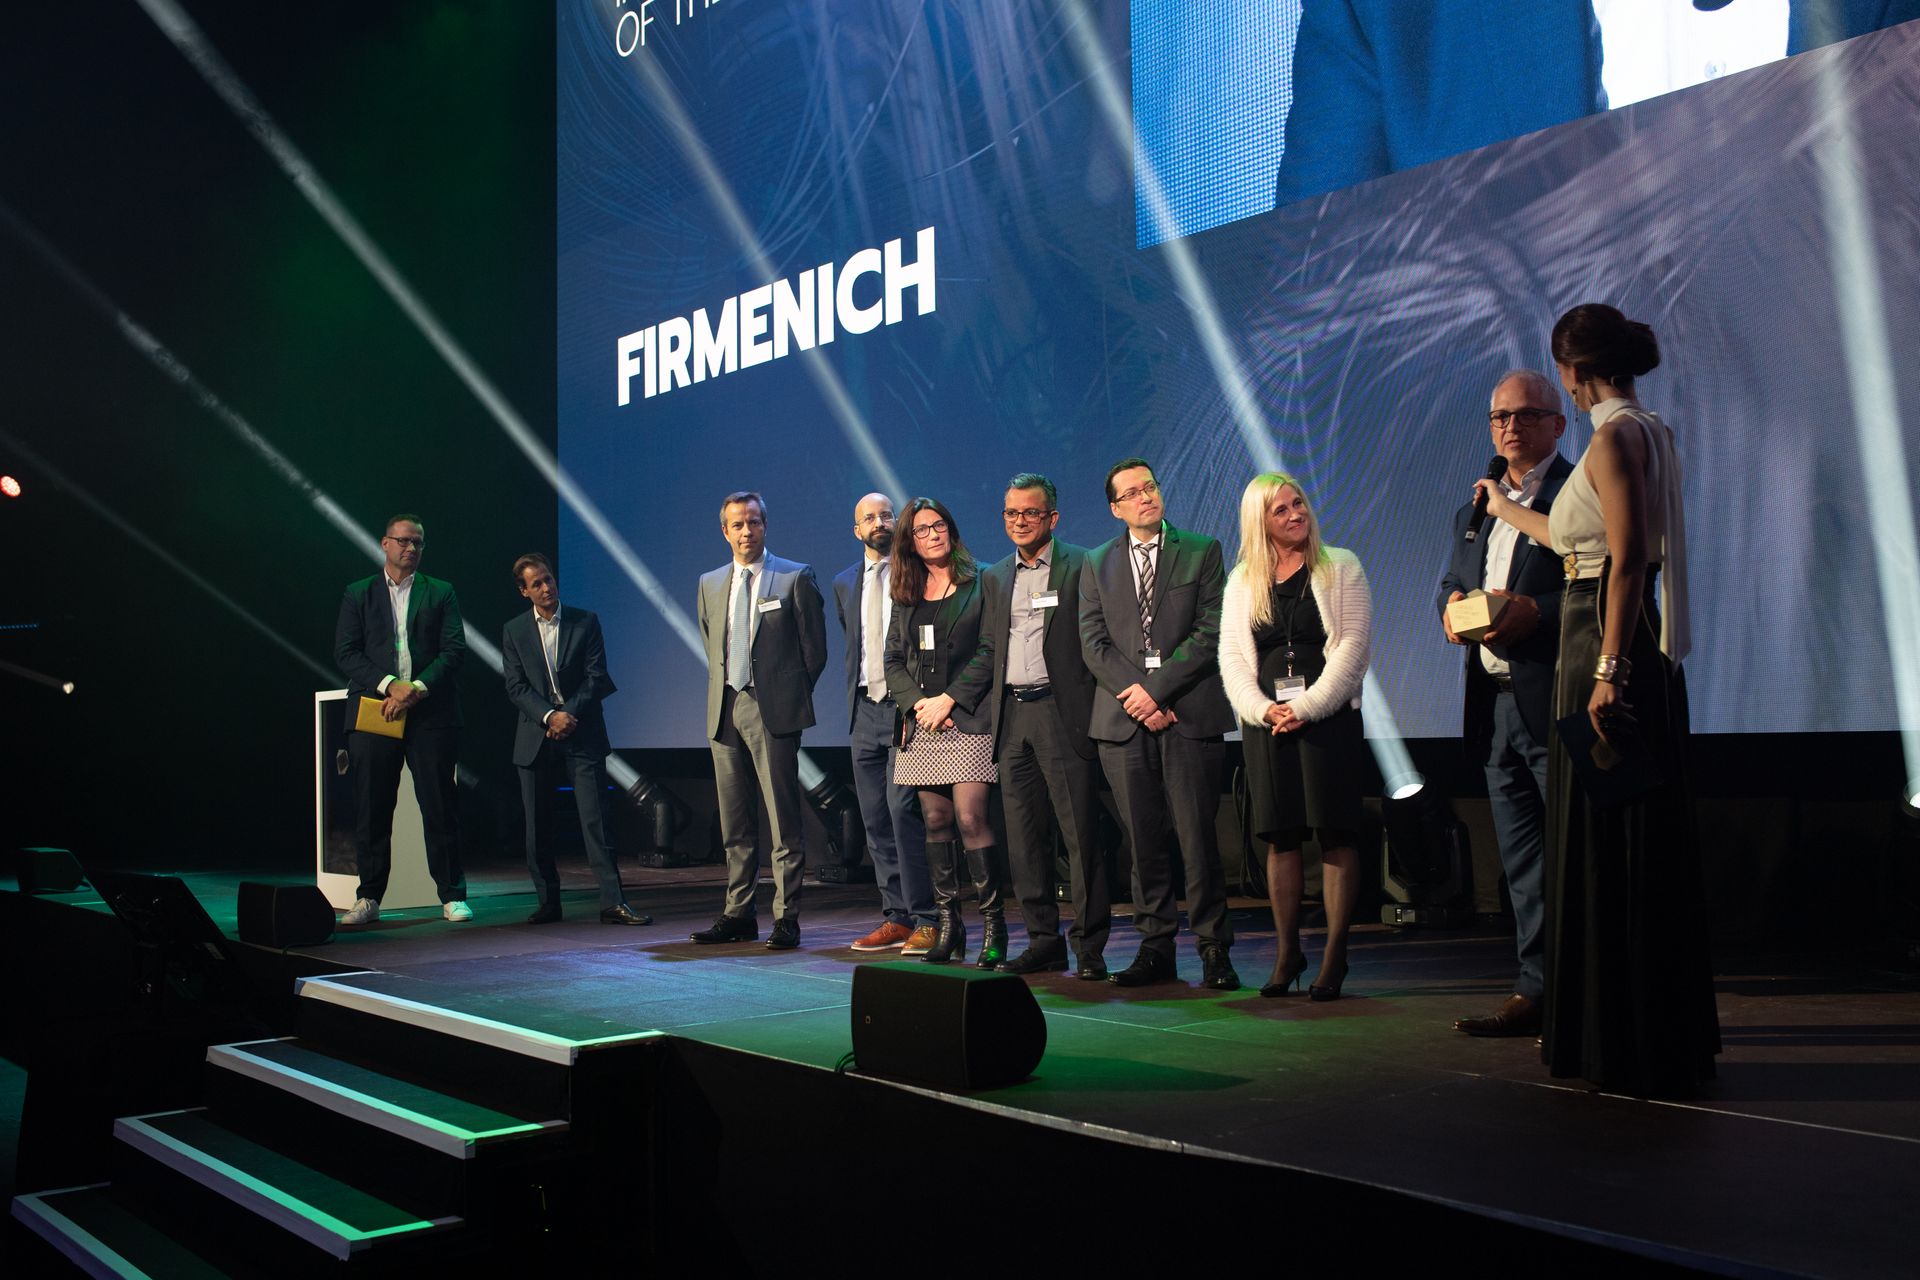 Kompanija "Firmenich" osvojila je nagradu "Digitalna inovacija godine" na "Digital Economy Award" u Švajcarskoj